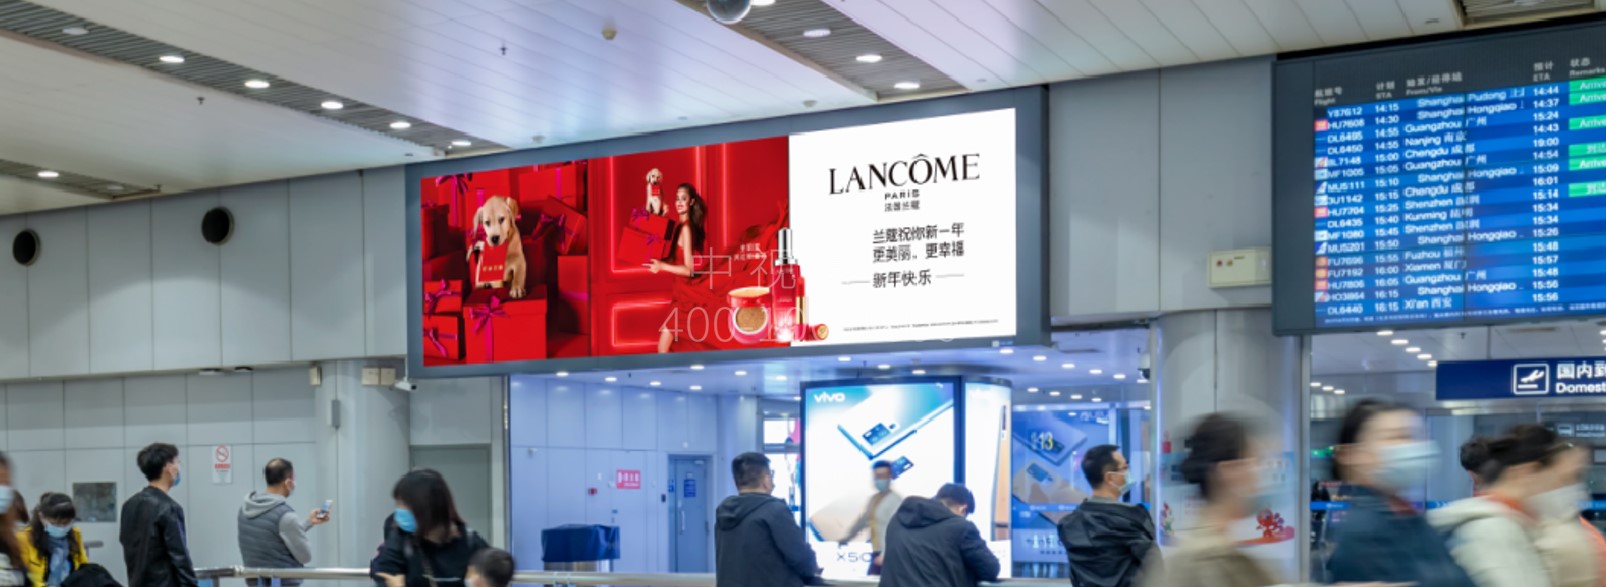 北京首都机场广告-T2国内到达行李厅出口LED屏套装